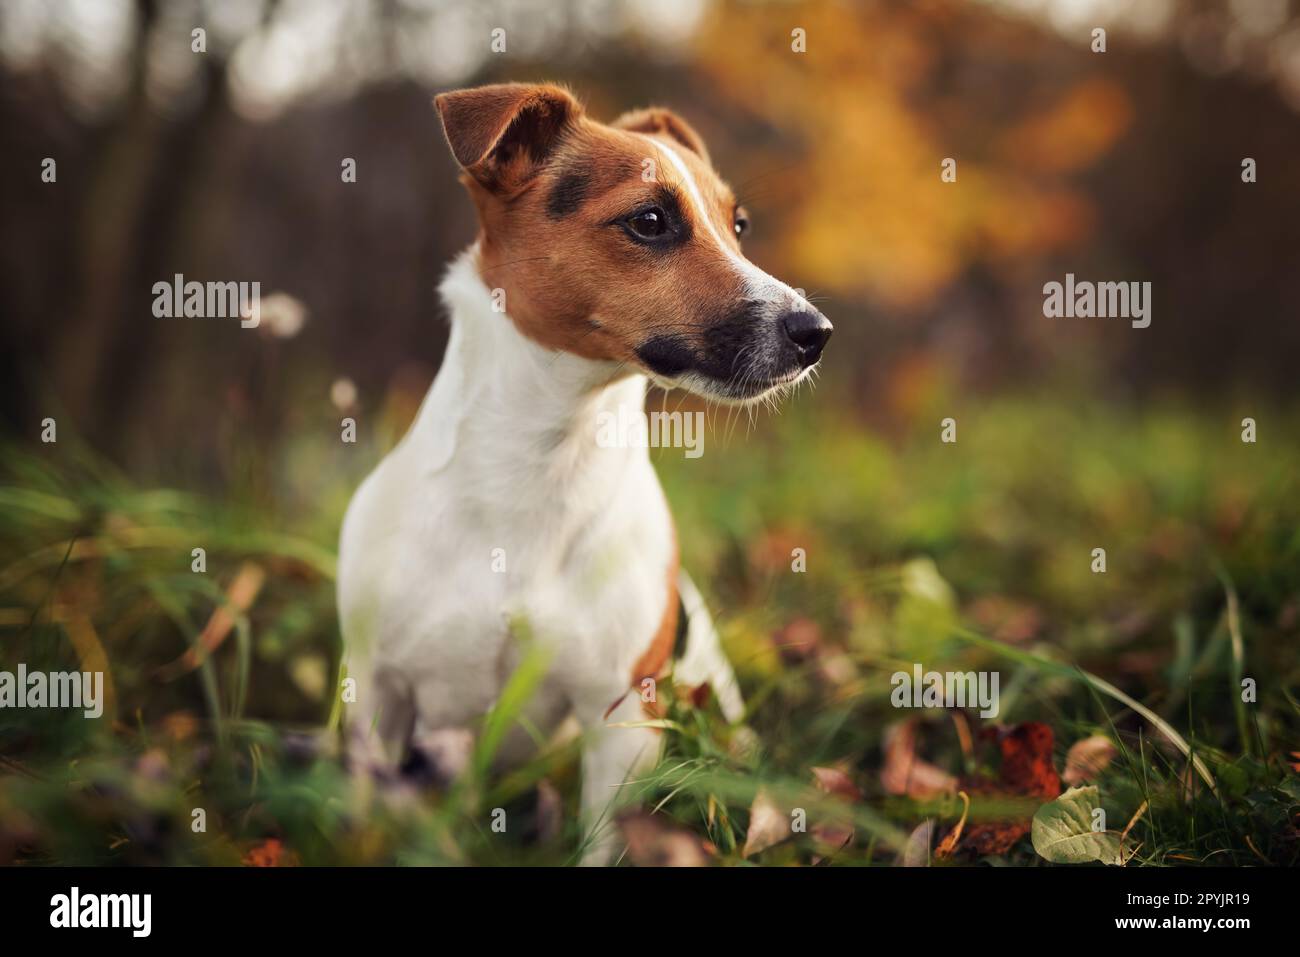 Piccolo Jack Russell terrier cane dettaglio su testa e viso, bello sfocato bokeh autunno sfondo Foto Stock